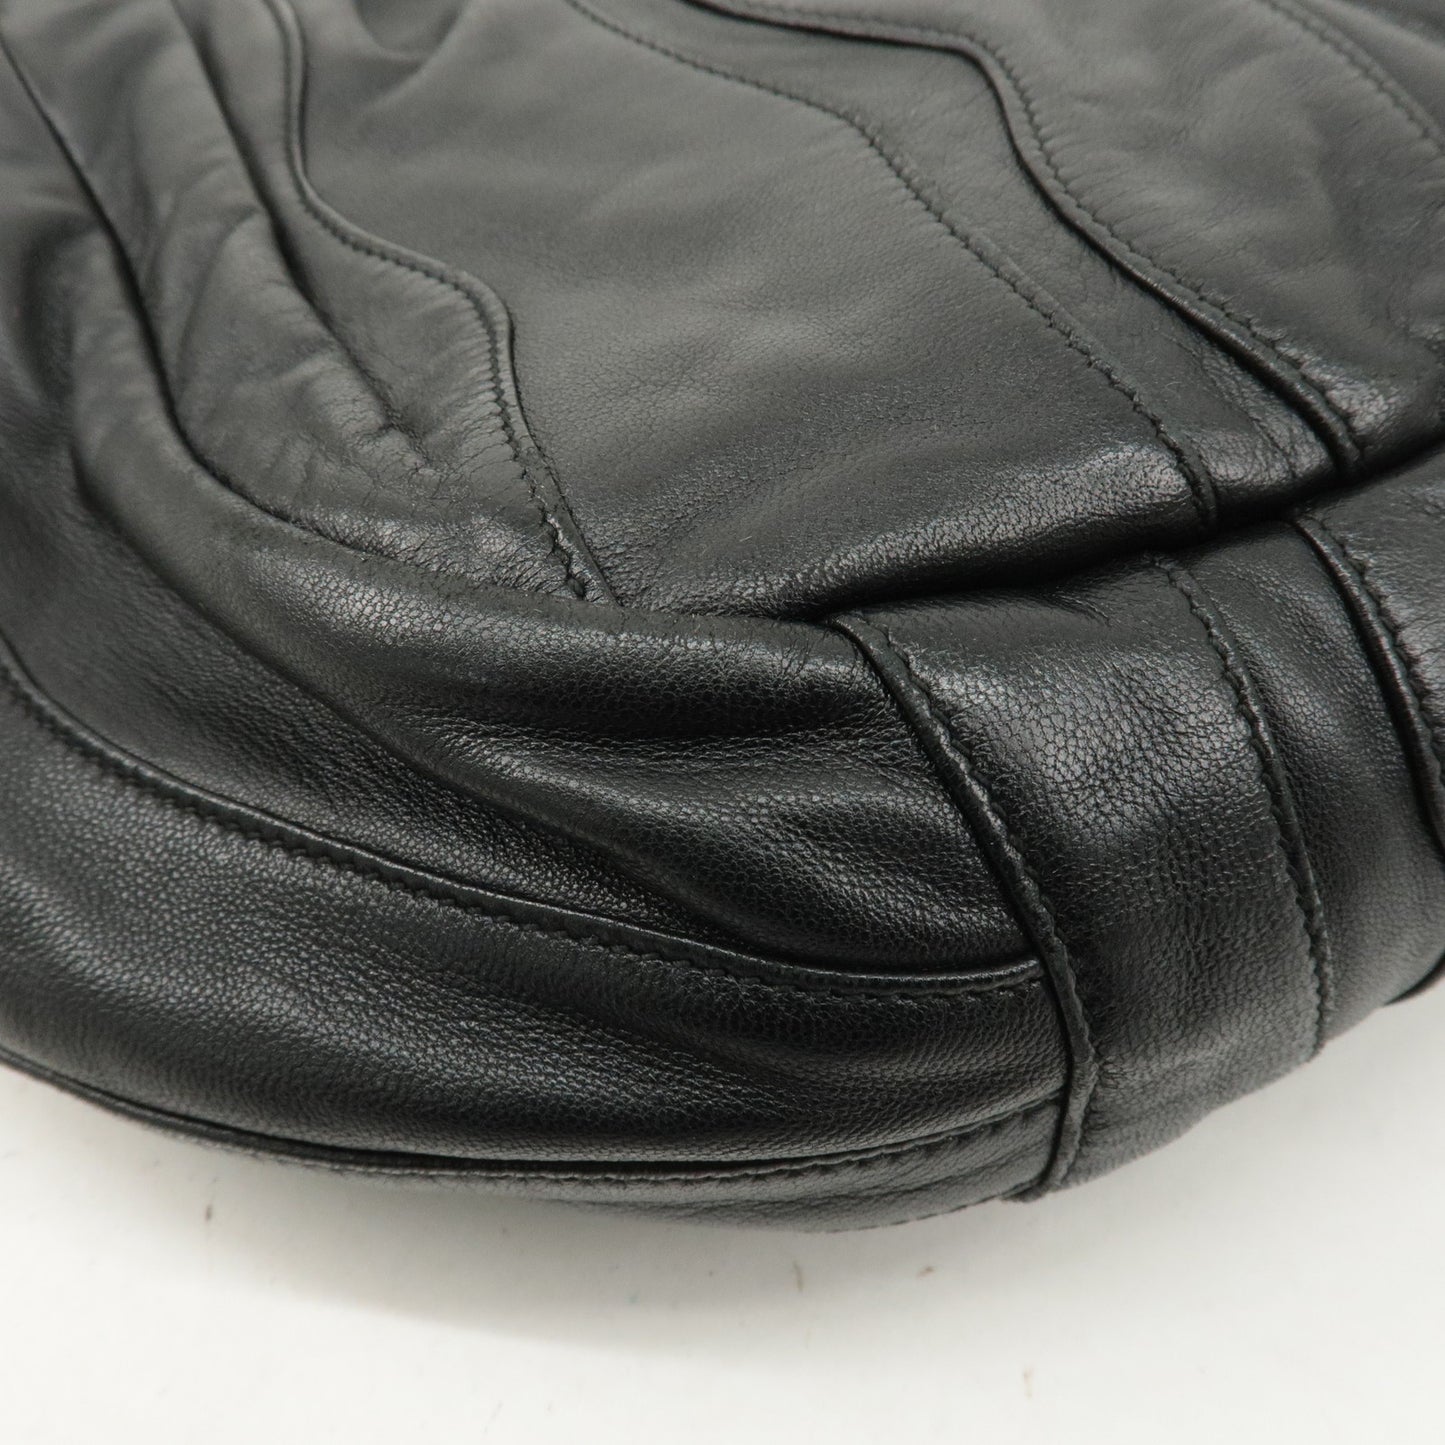 PRADA Logo Leather 2Way Bag Shoulder Bag Hand Bag Black